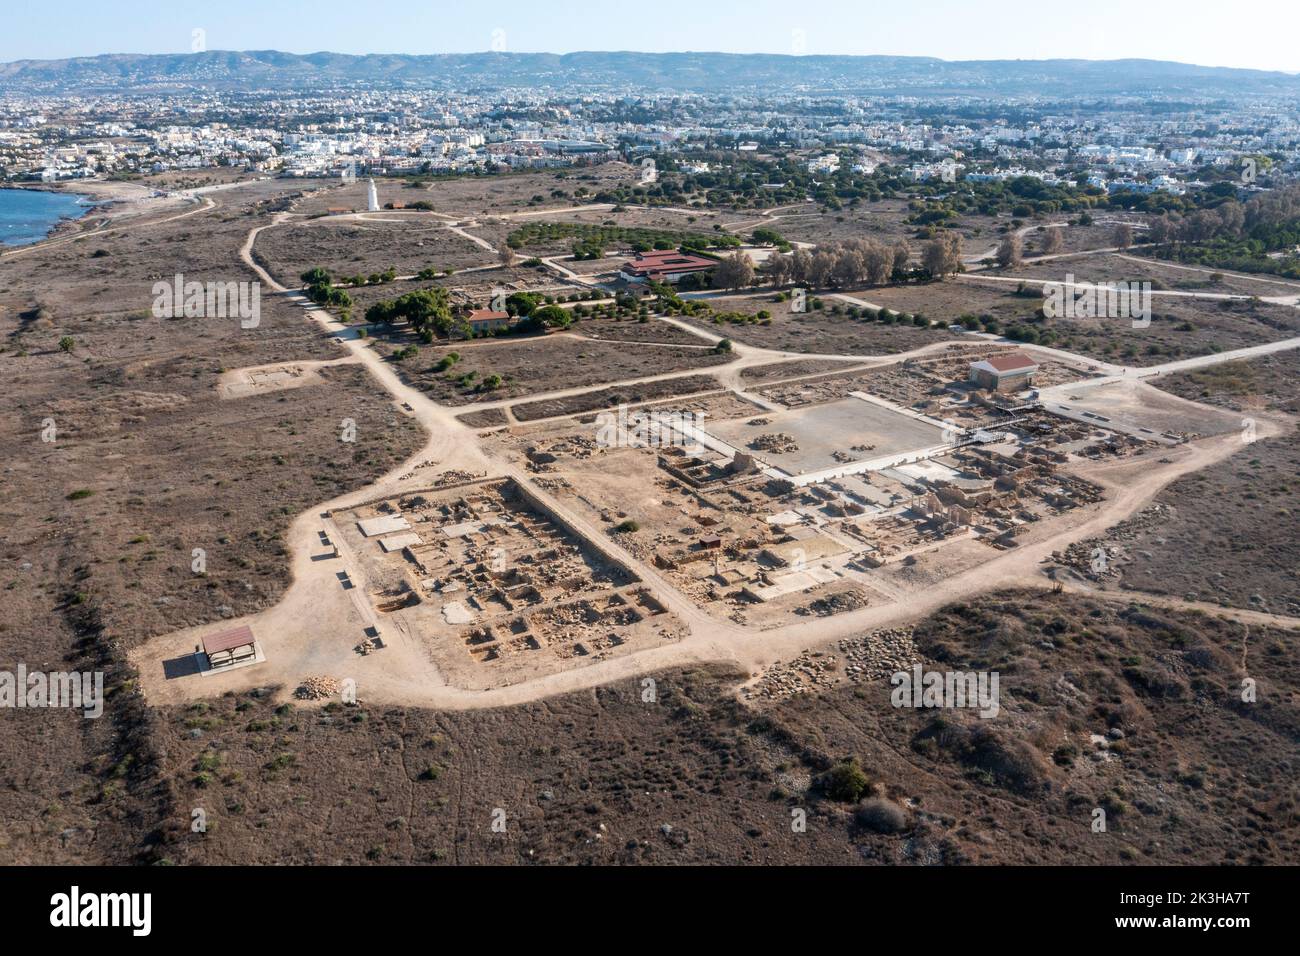 Vista aérea del parque arqueológico y faro de Paphos, Paphos, Chipre. Foto de stock